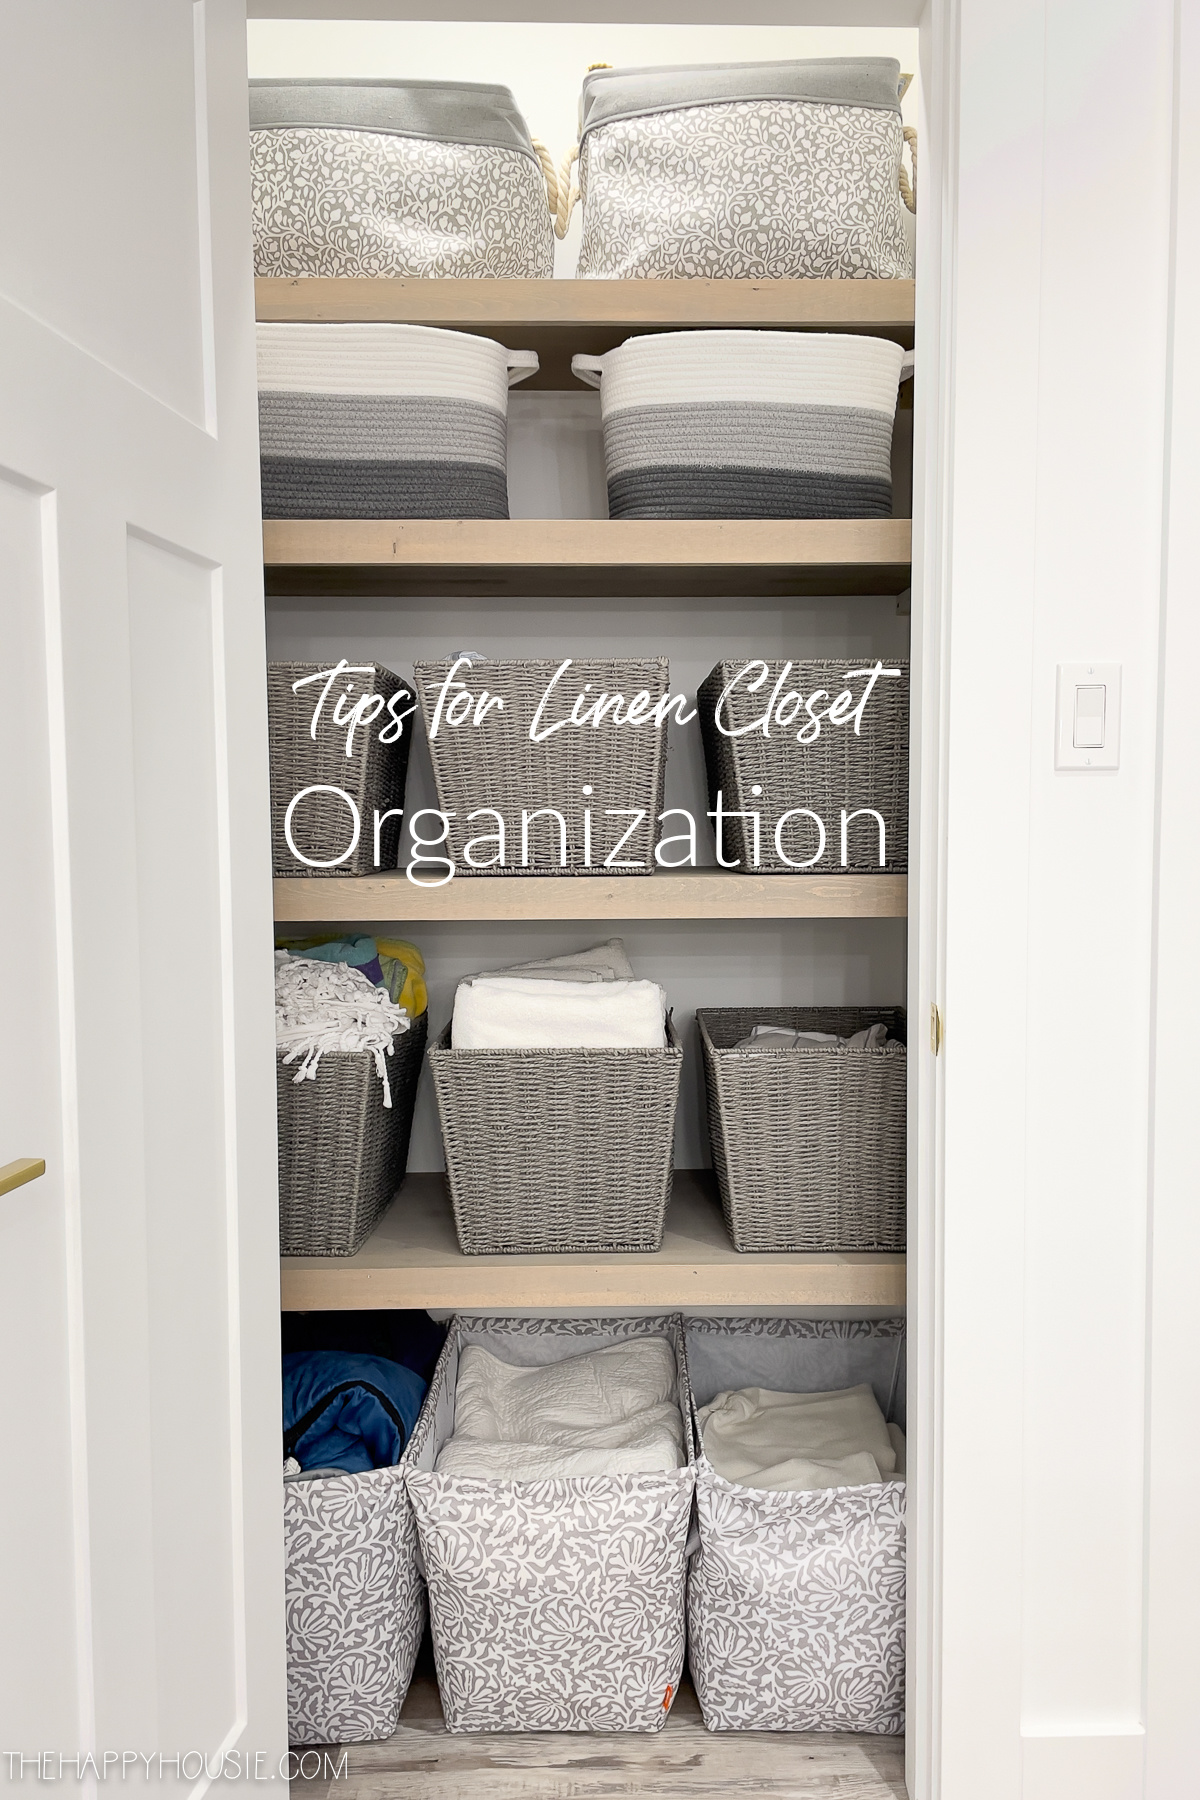 15 Best Linen Closet Organization Ideas & Tips